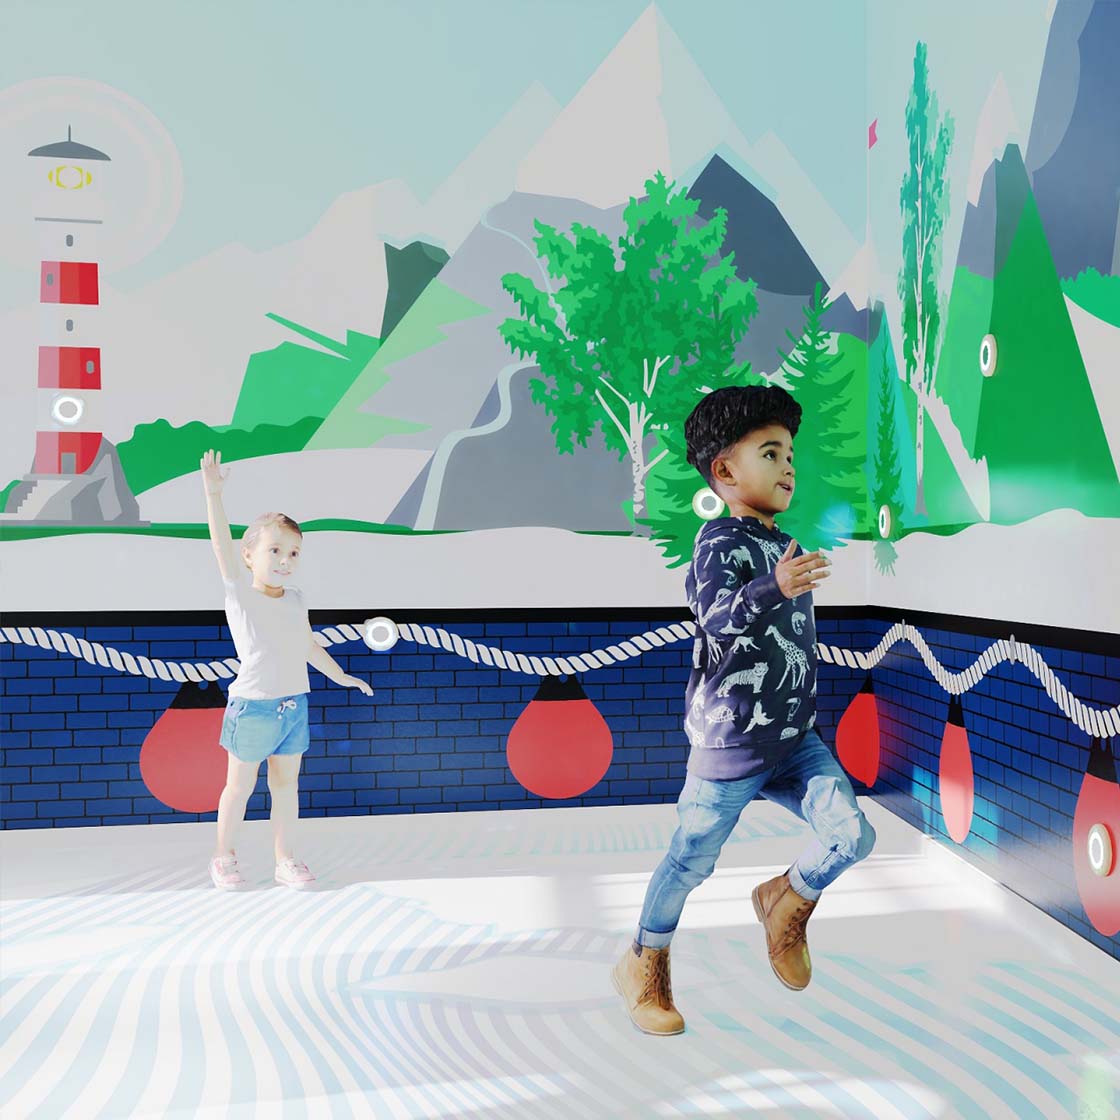 Коллекция IKC I Игры детей с Activity Wall - новый способ передвижения